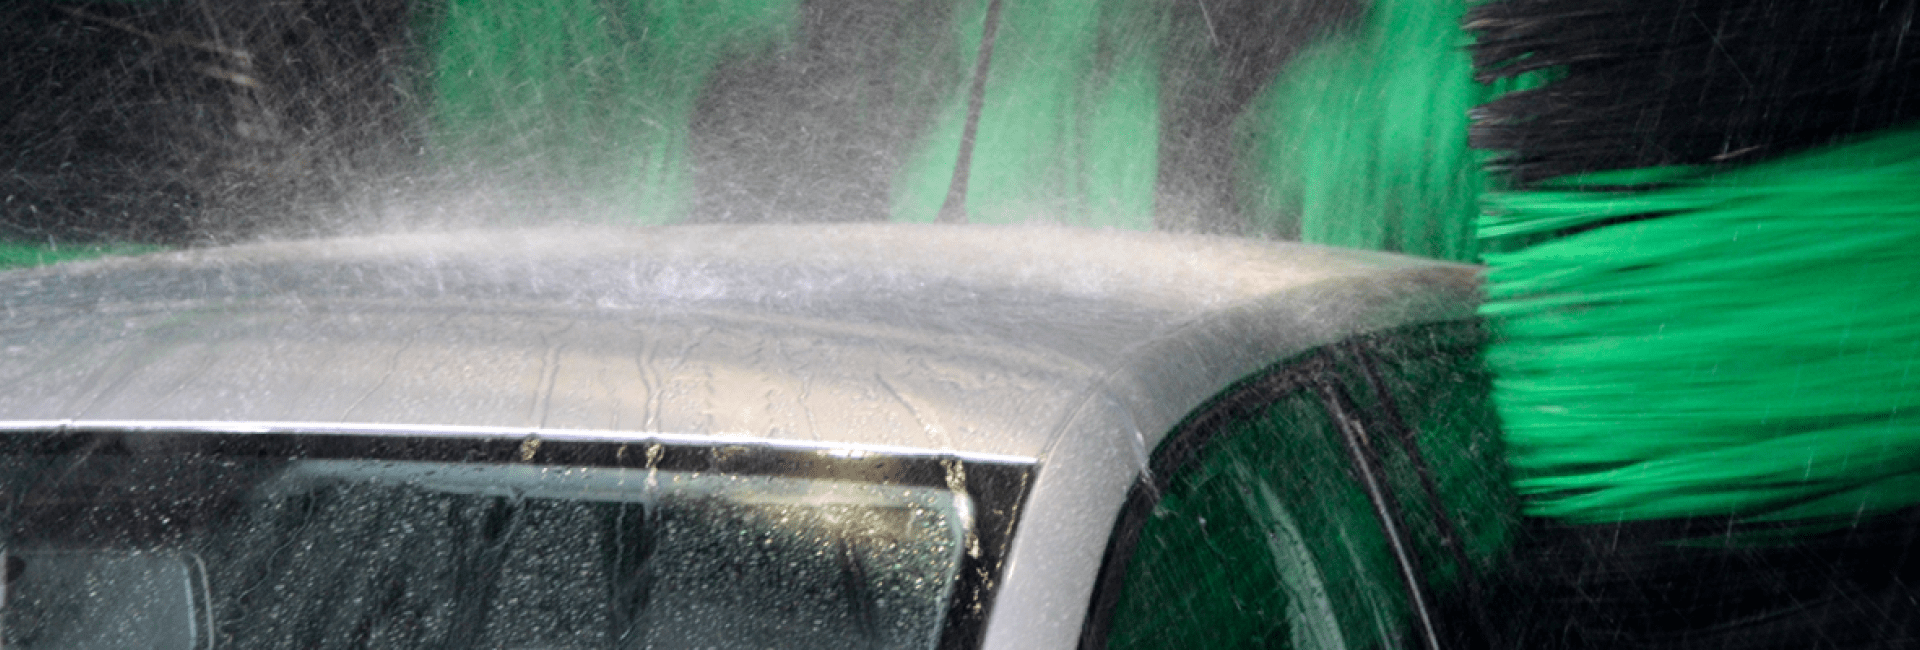 Le dessus d'une voiture sur laquelle l'eau, telle qu'une forte pluie, tombe lorsqu'elle est lavée par les buses à haute pression d'une portique de lavage